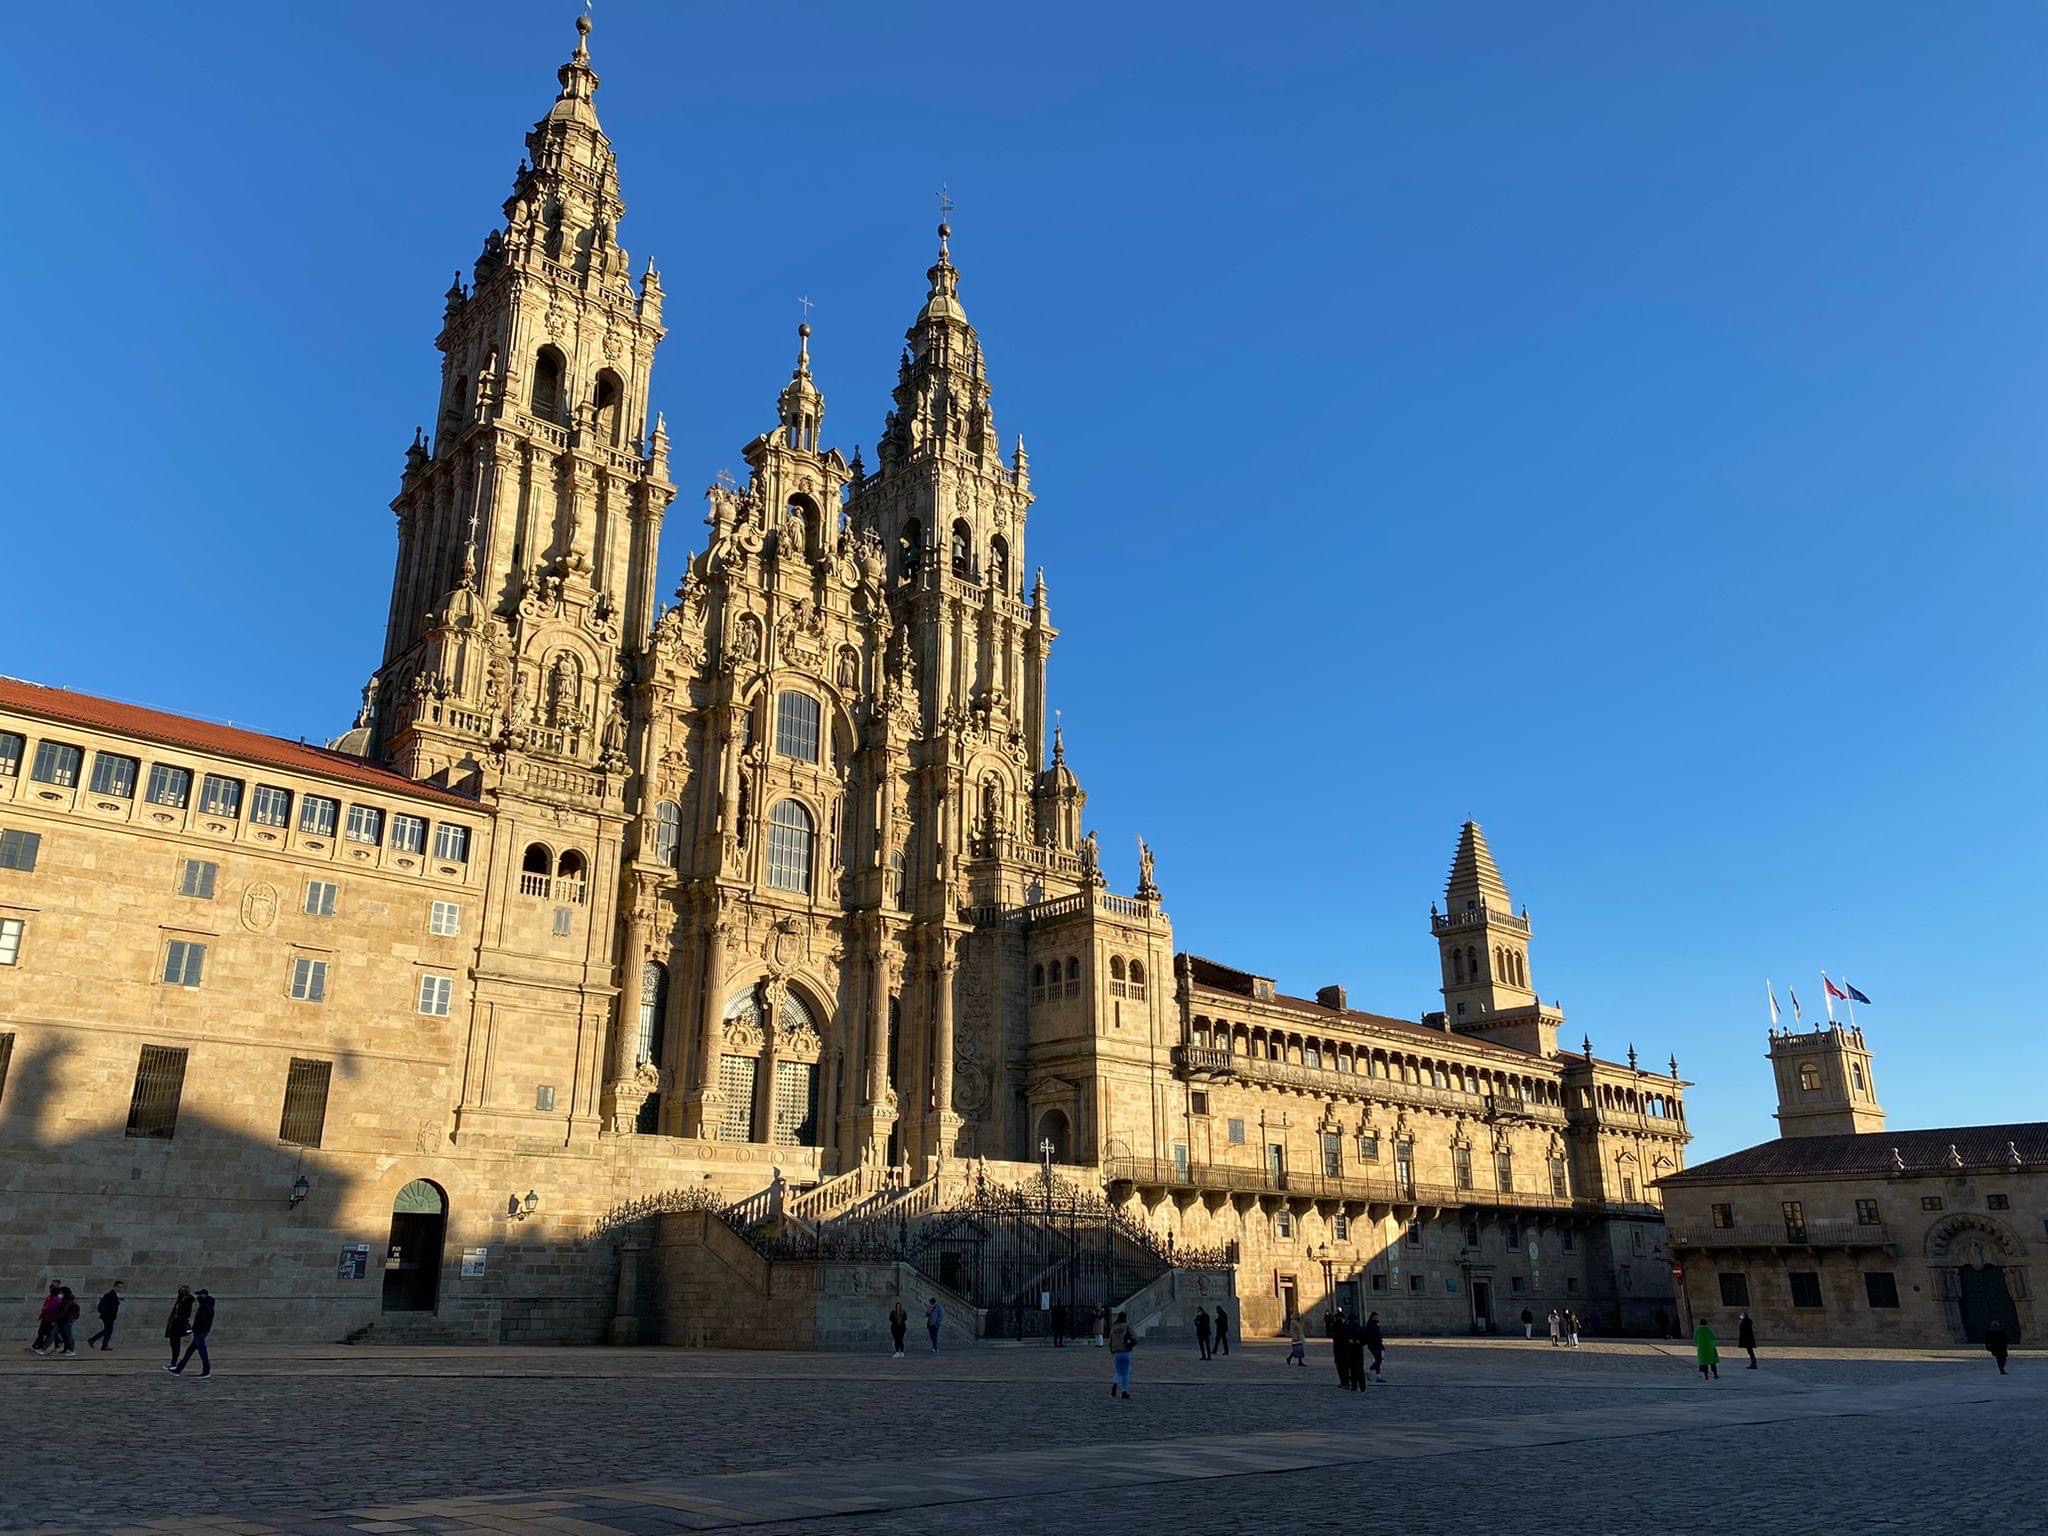 Day 8 : Santiago de Compostela